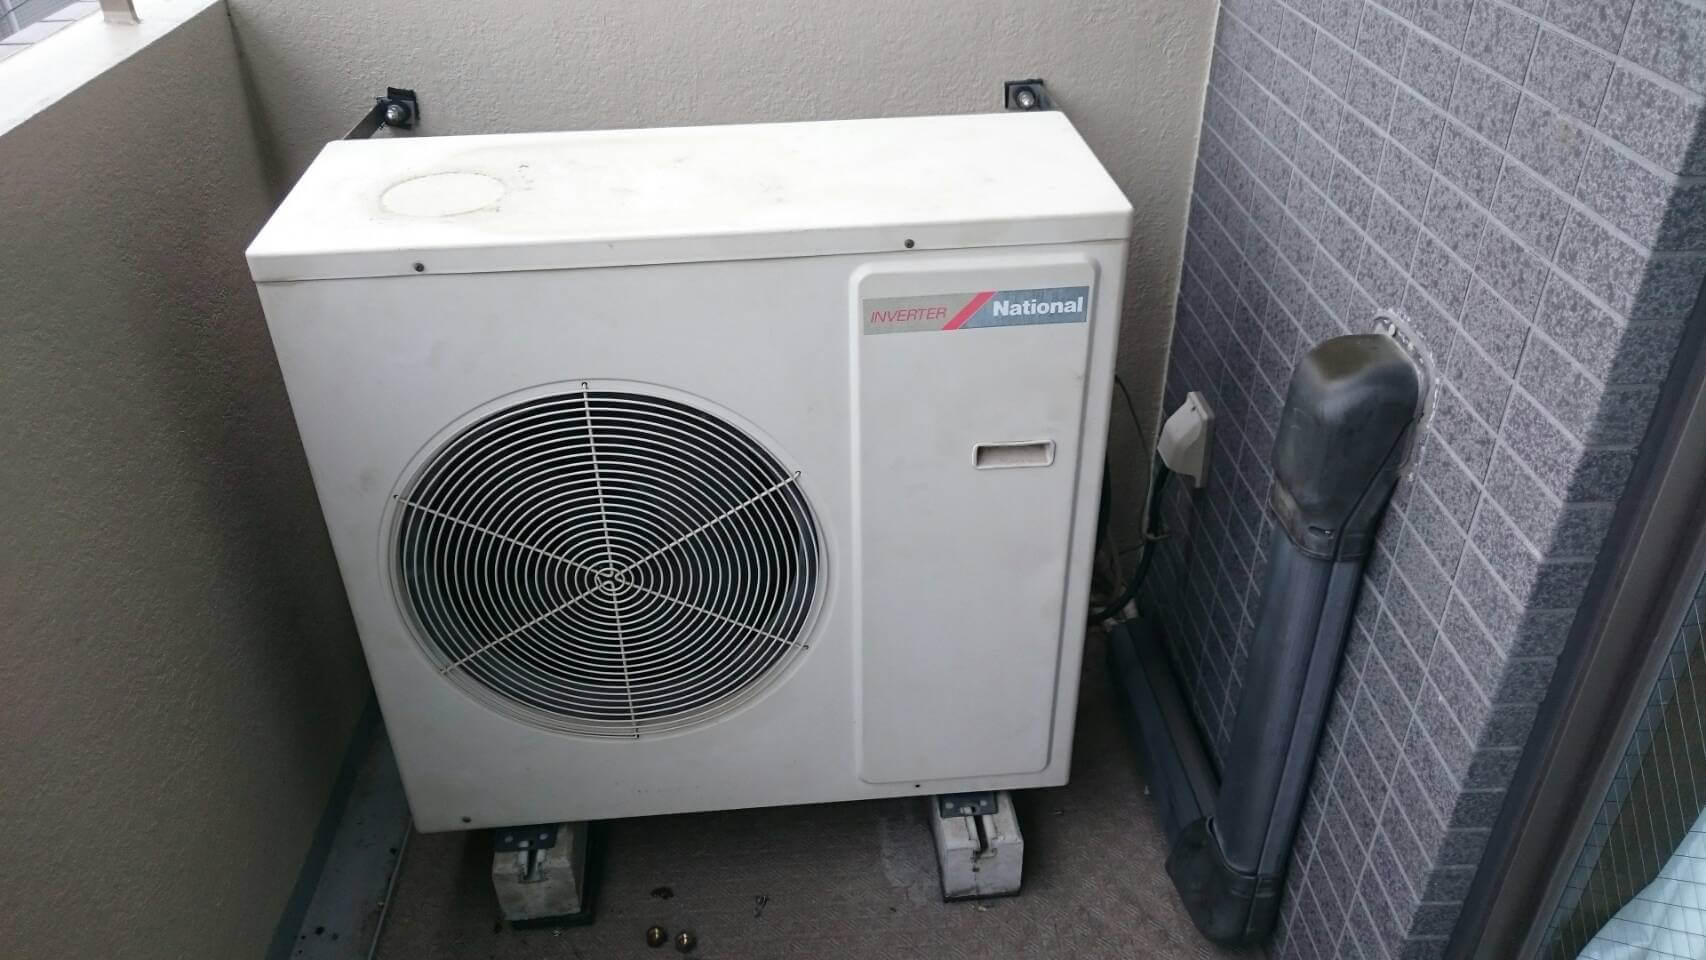 冷暖房/空調 エアコン パナソニックのマルチエアコン2台を交換しました | | エアコン専門館 